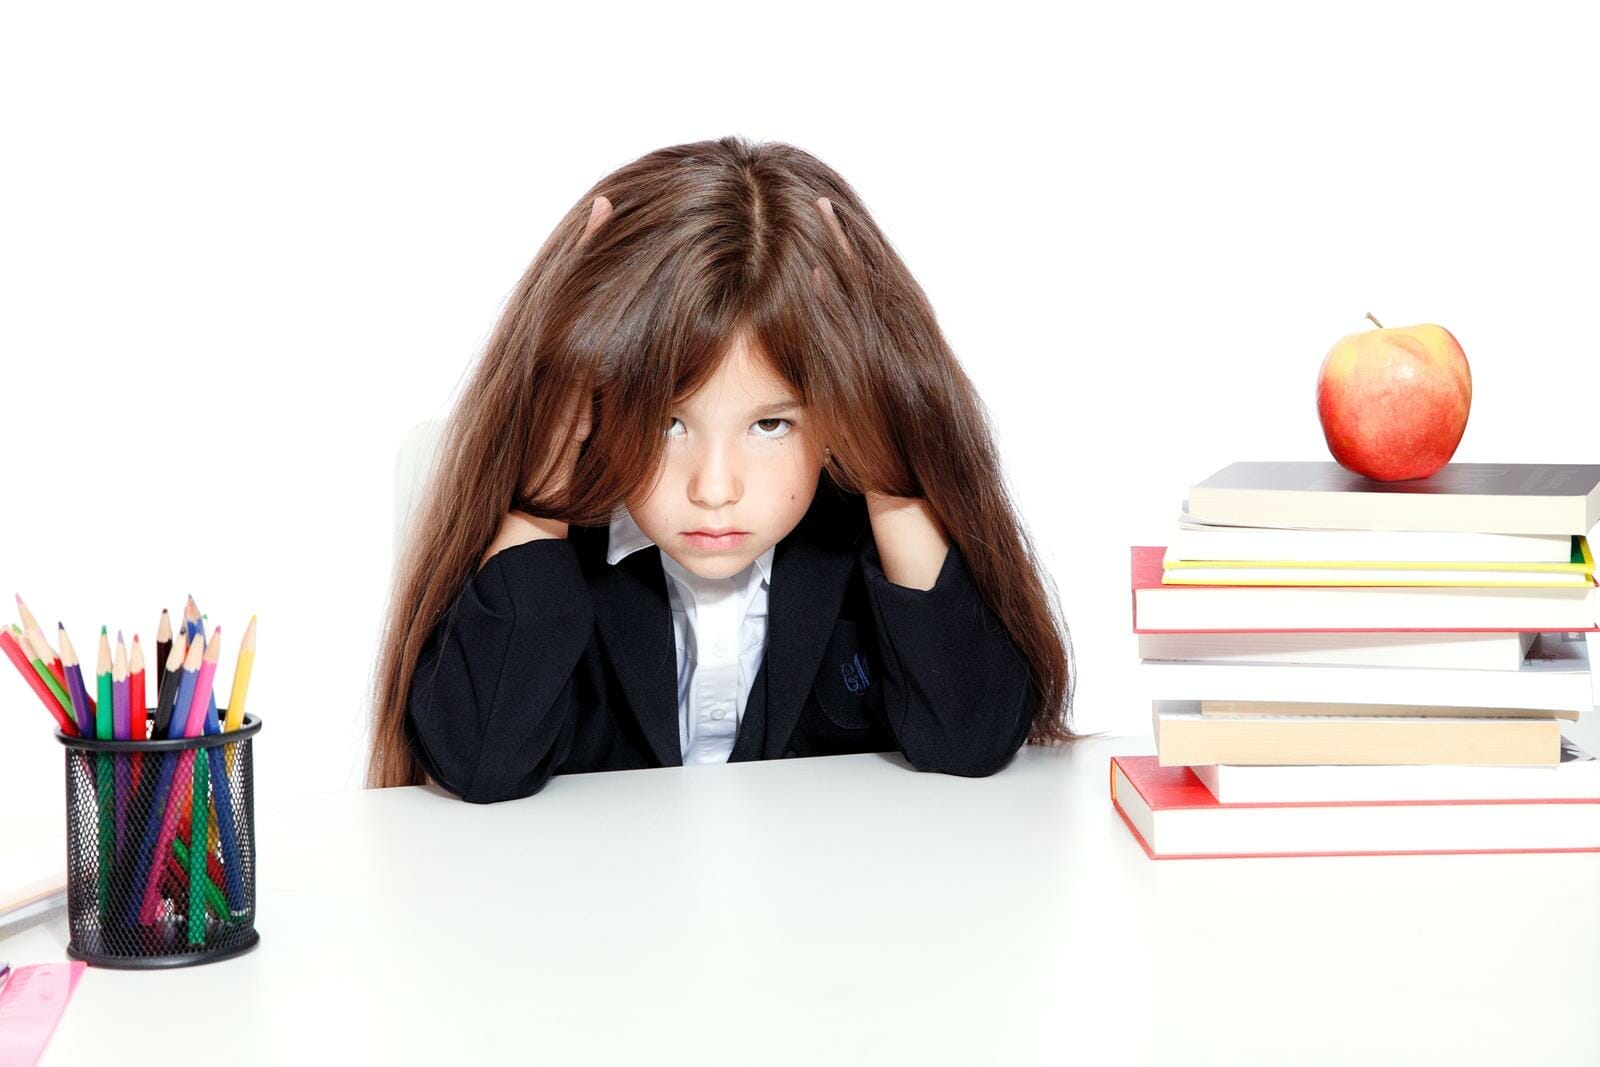 criança frustrada com os estudos, com expressão aborrecida, ao lado de uma pilha de livros com uma maçã em cima, e um porta-lápis do outro lado